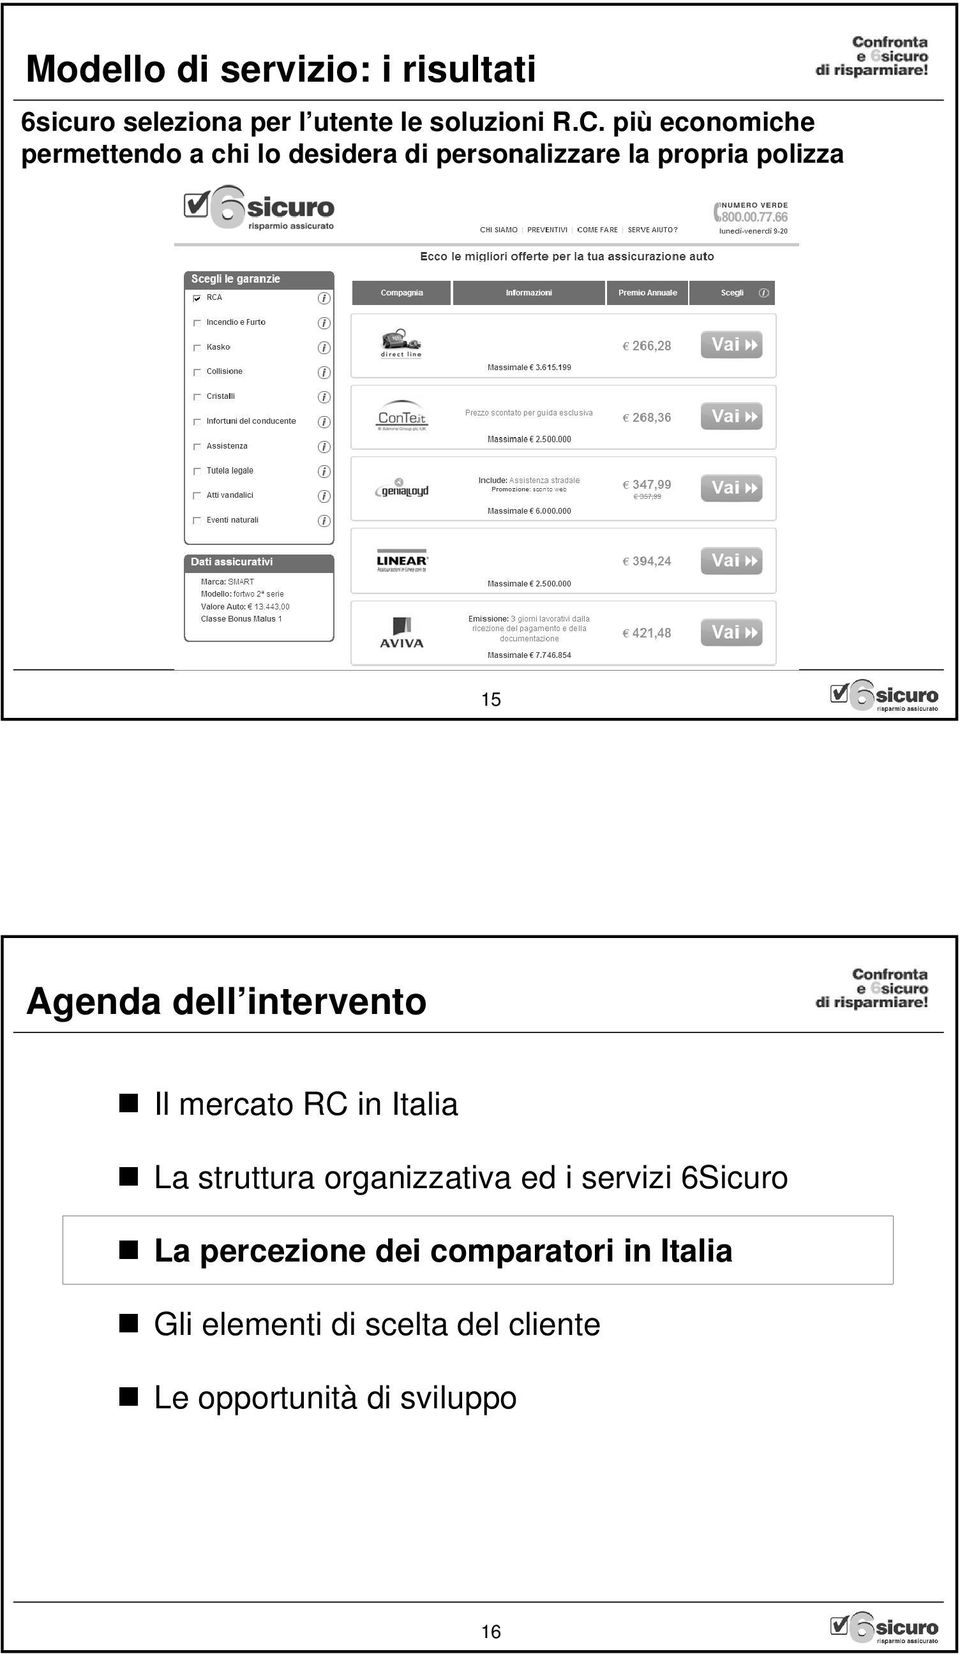 dell intervento Il mercato RC in Italia La struttura organizzativa ed i servizi 6Sicuro La